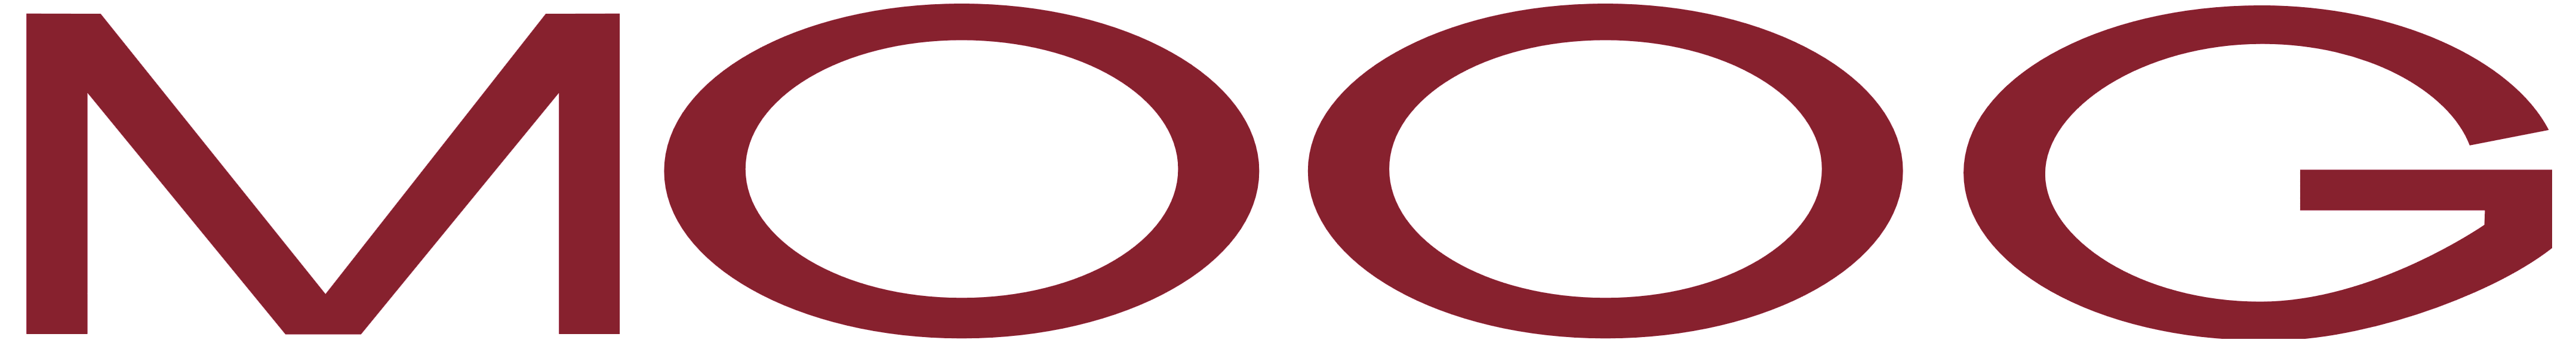 Moog logo, logotype